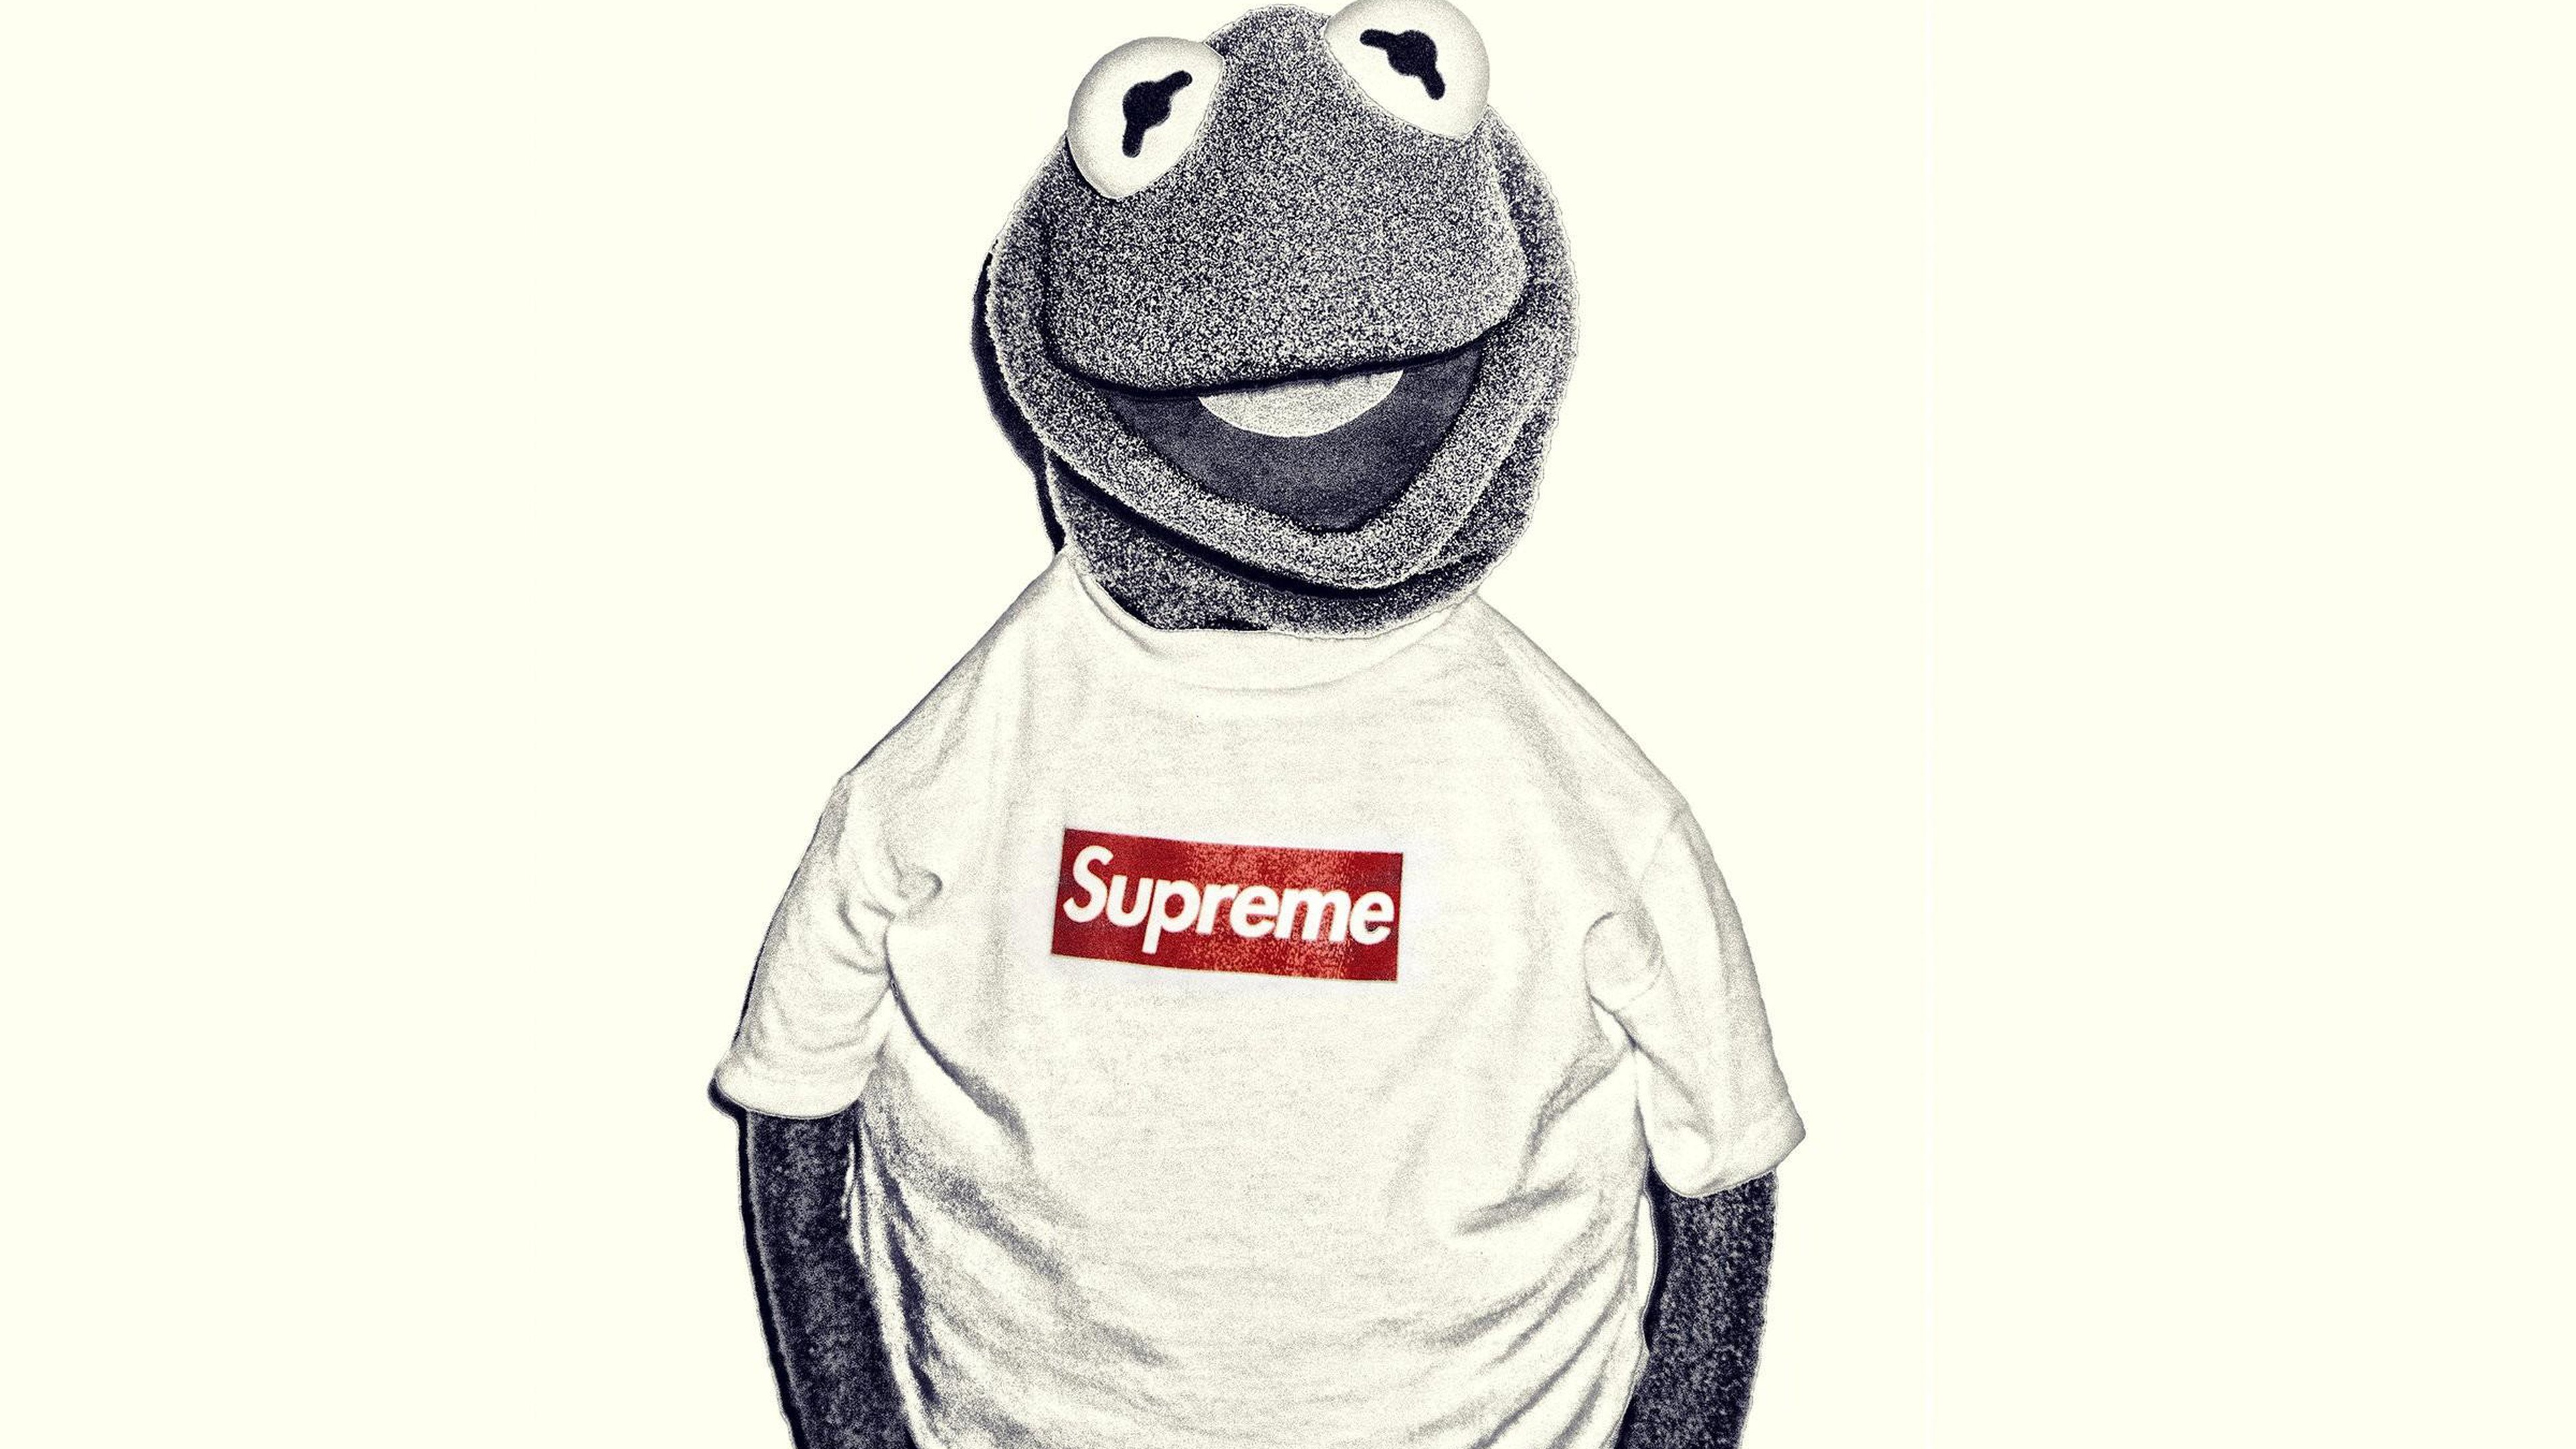 Kermit la Grenouille, Suprême, Les Vêtements D'extérieur, T-shirt, Louis Vuitton. Wallpaper in 3840x2160 Resolution